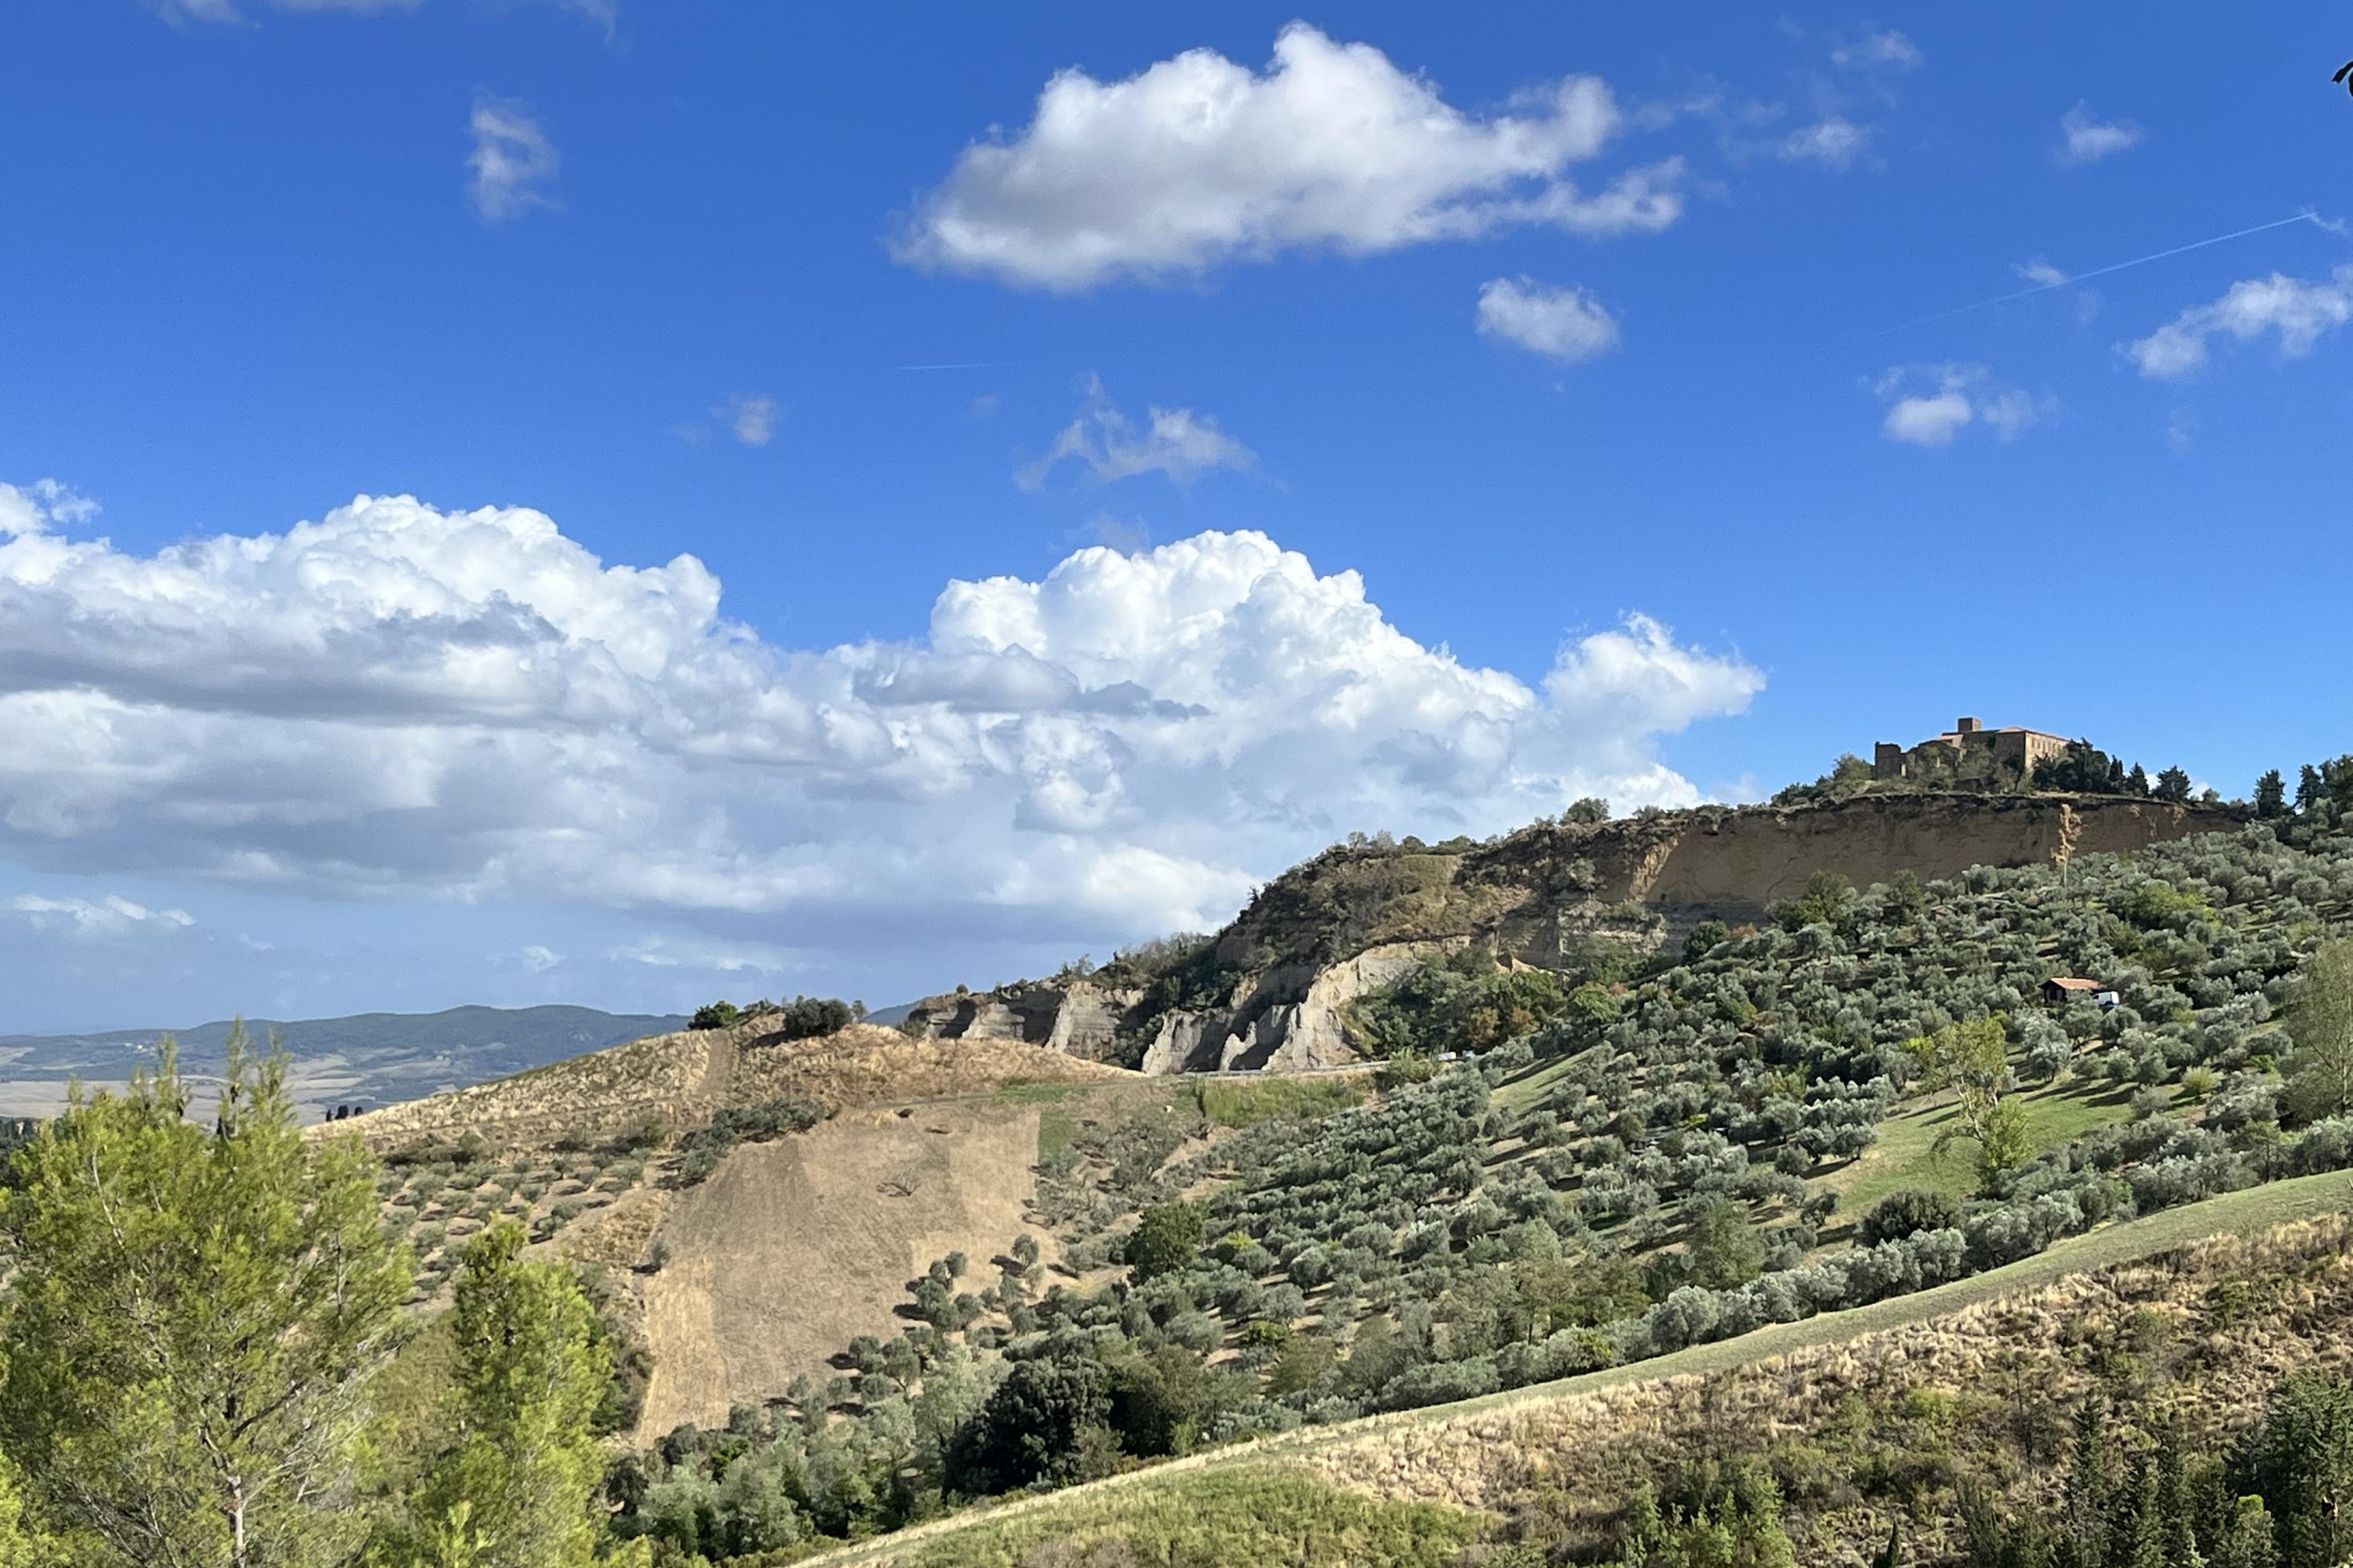 Block auf eine herbstliche Landschaft in der Toskana mit frisch gepflügten Feldern, Olivenhainen und einem alten Kloster